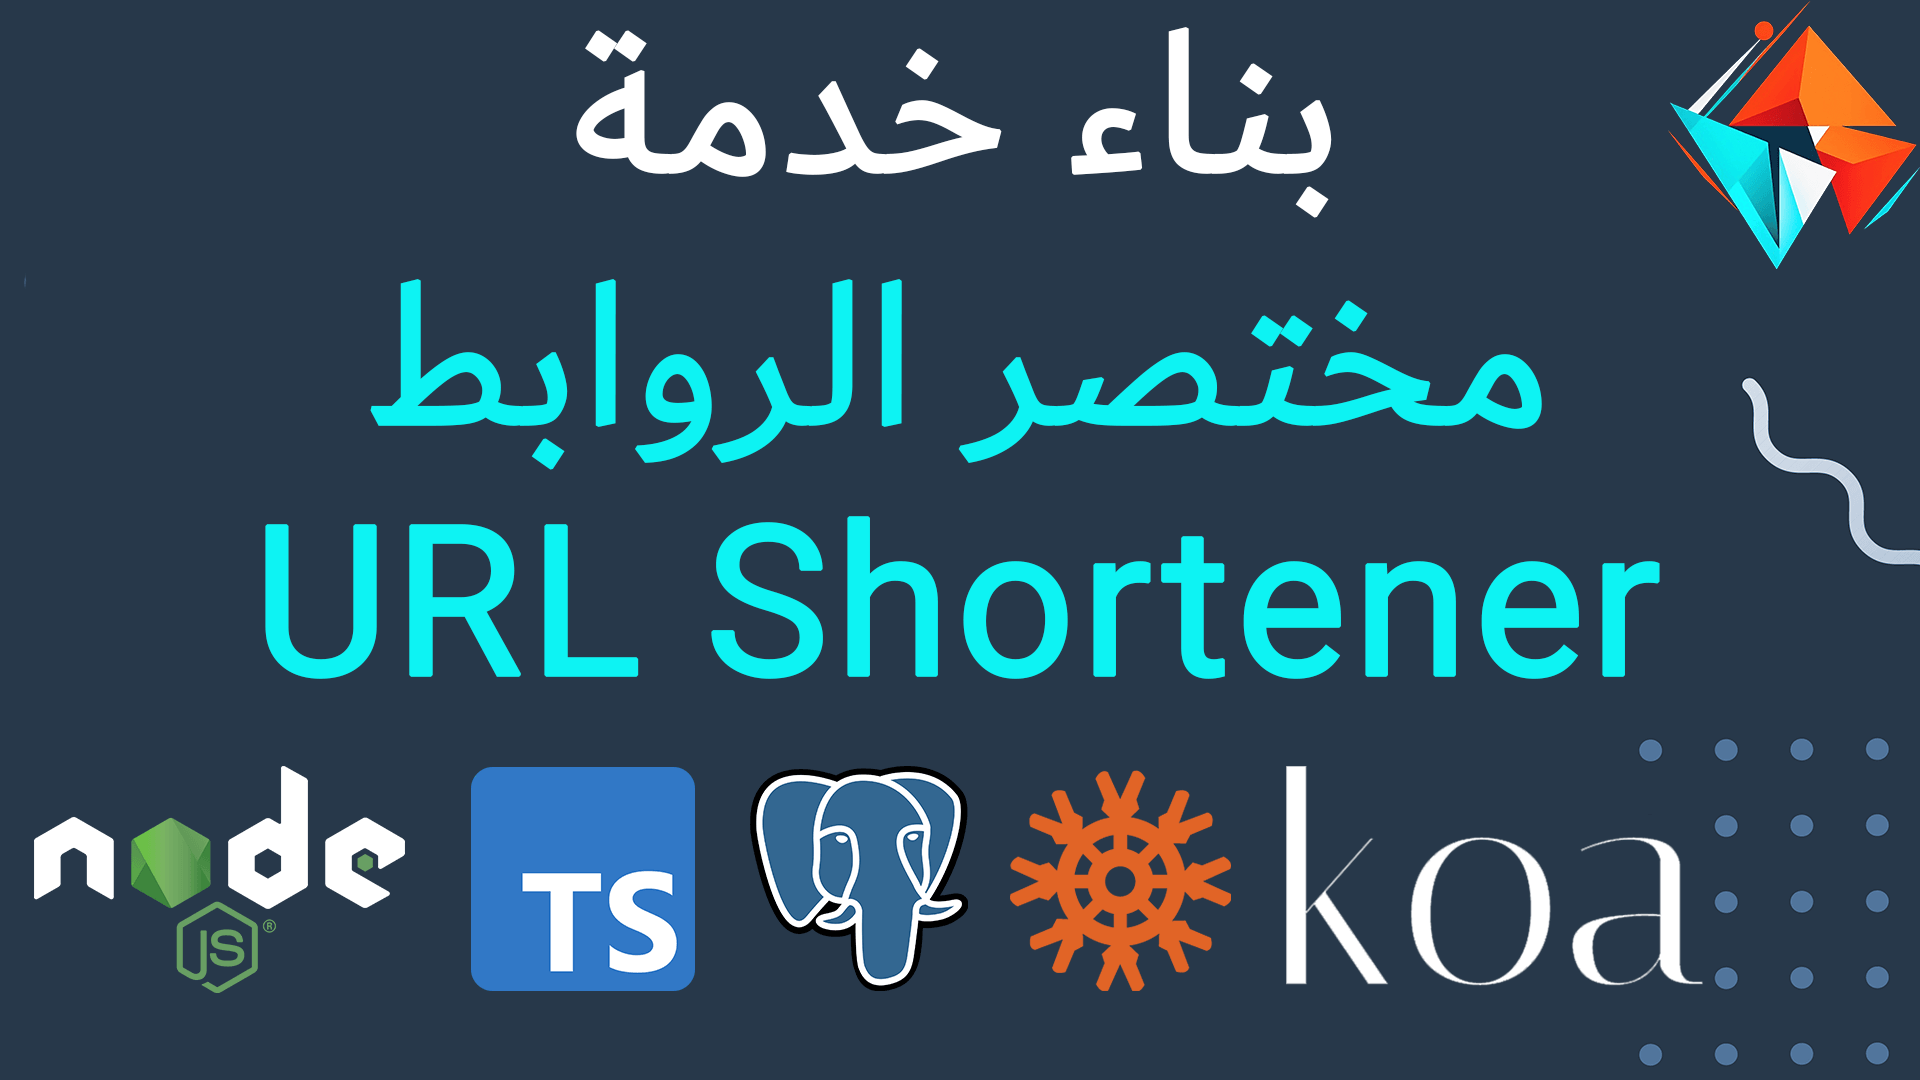 URL Shortener: TypeScript, PostgreSQL, Koa.Js, REST and MVC Thumbnail